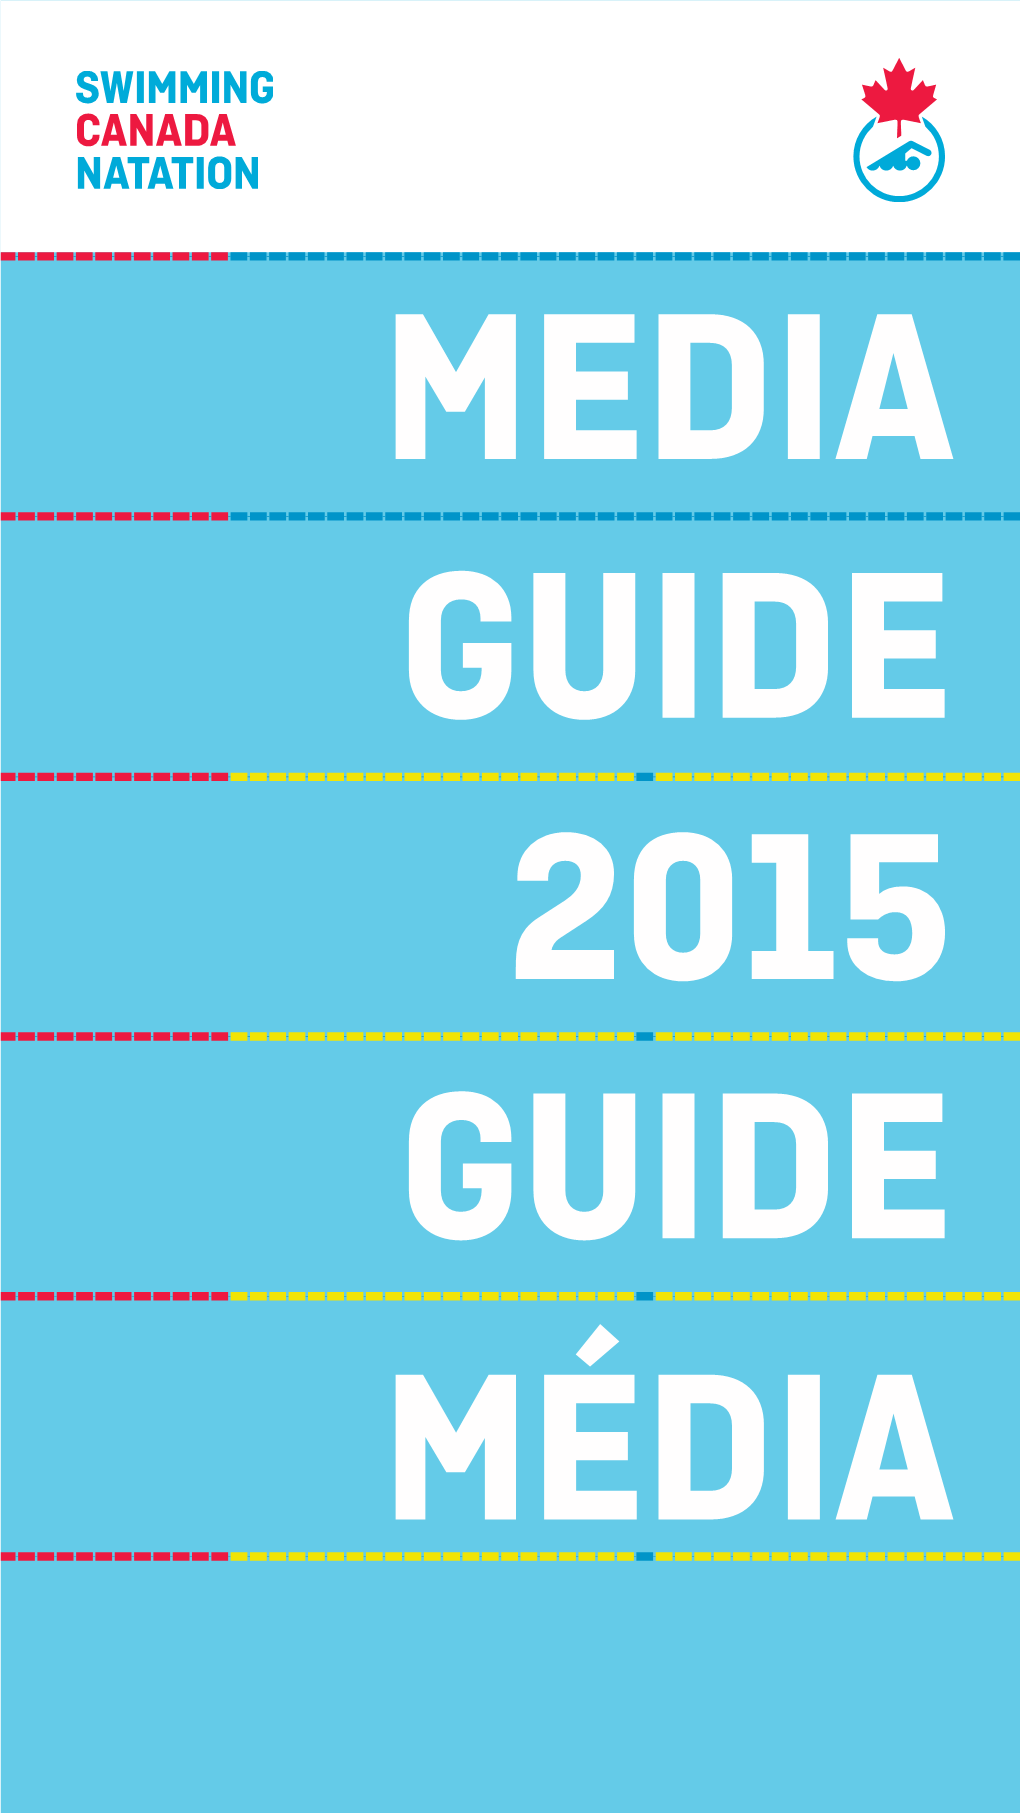 2015 Guide Media Guide Média